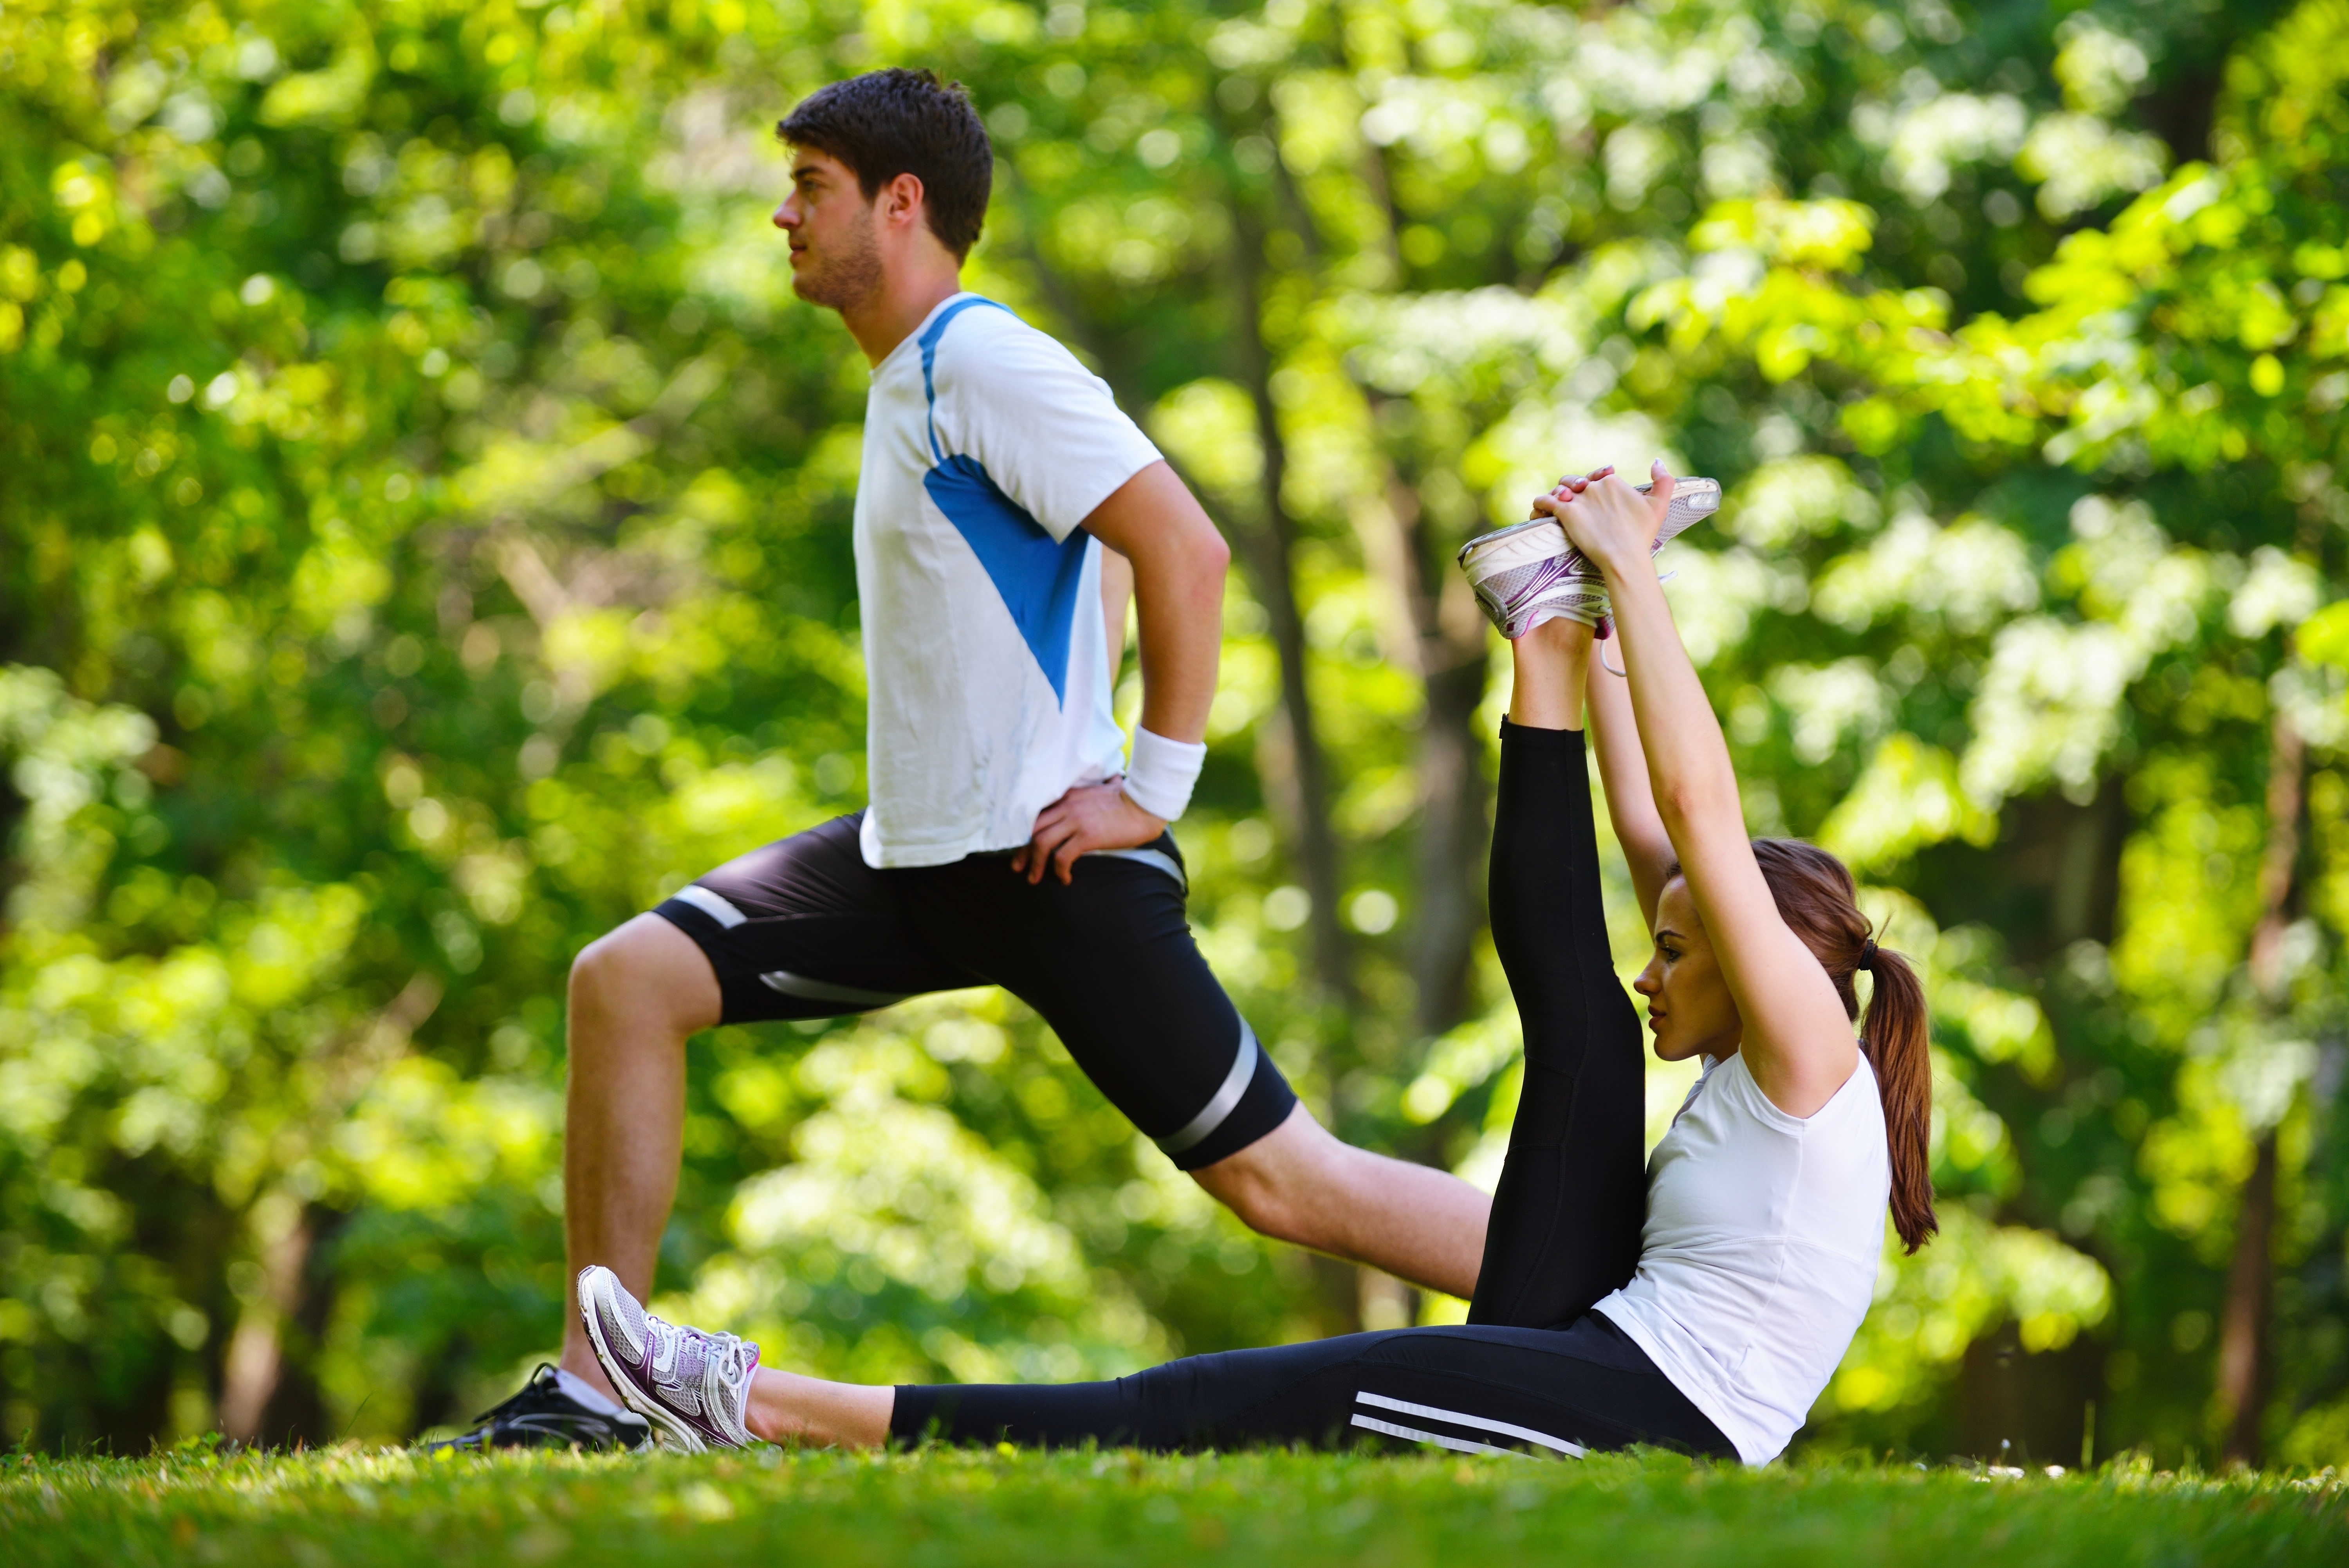 Physical games. Физические упражнения. Занятия спортом на свежем воздухе. Спортивные люди. Здоровый образ жизни.